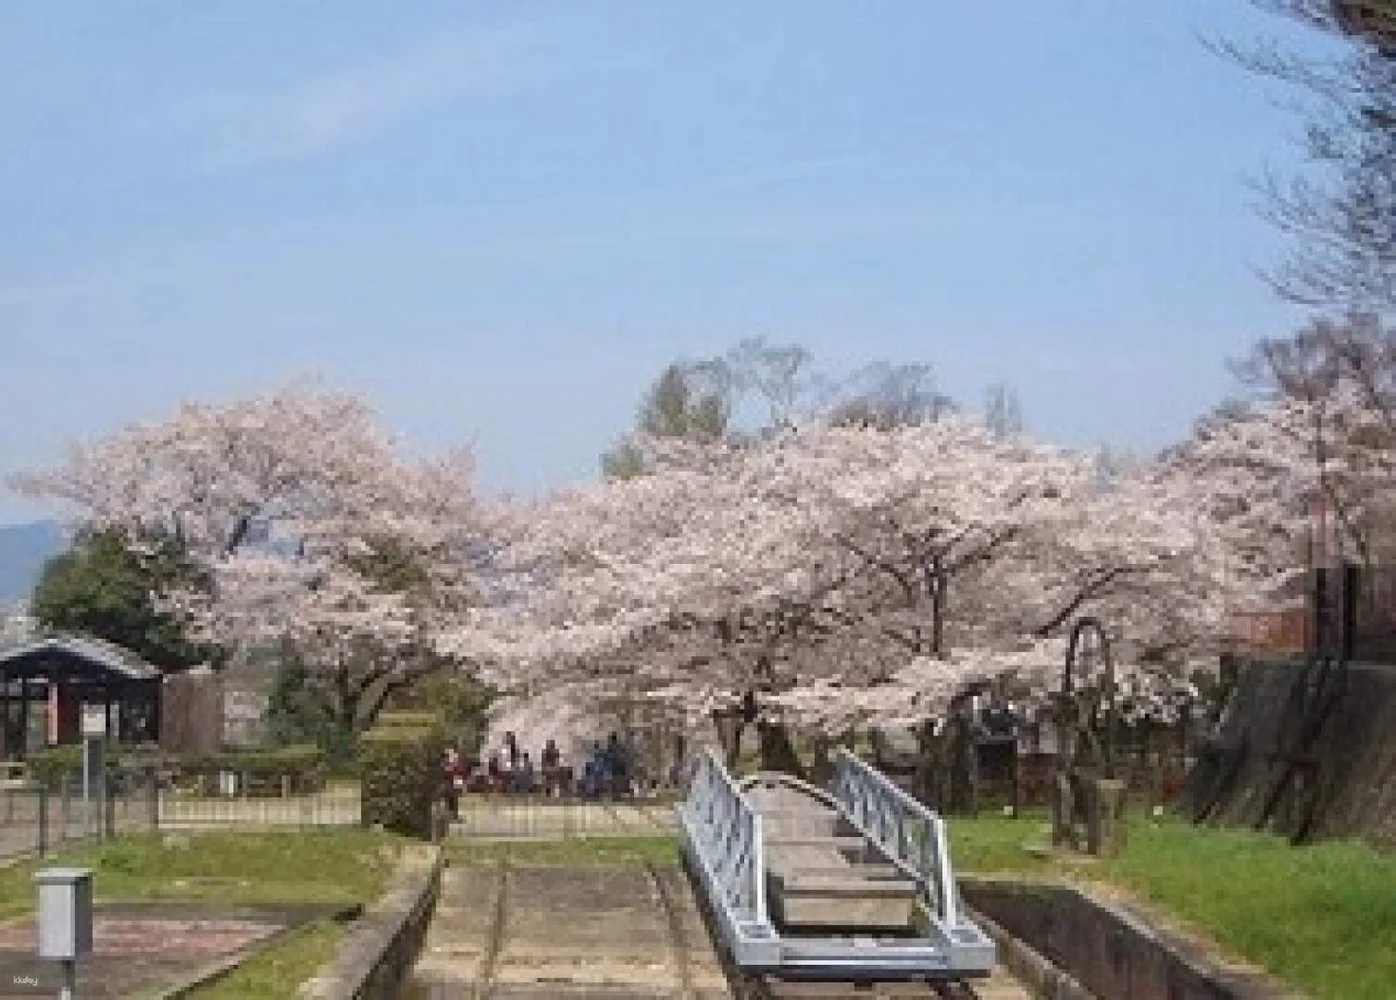 Kyoto 1-Day Cherry-Blossom Tour from Osaka: Hirano Shrine & Maruyama Park & Keage Incline